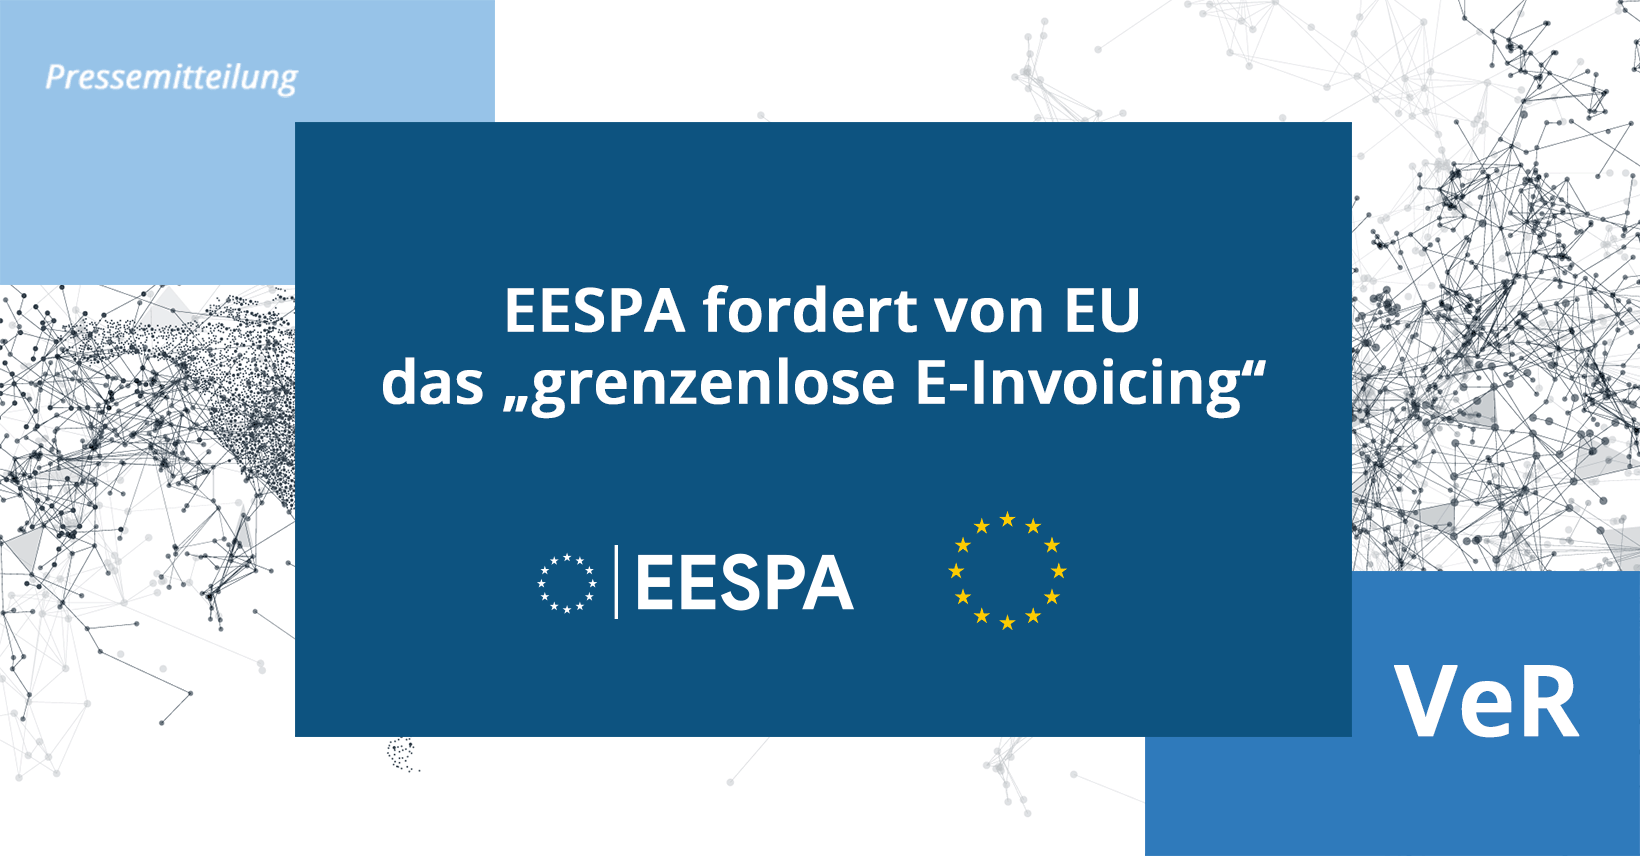 Pressemitteilung: EESPA fordert von EU das „grenzenlose E-Invoicing“